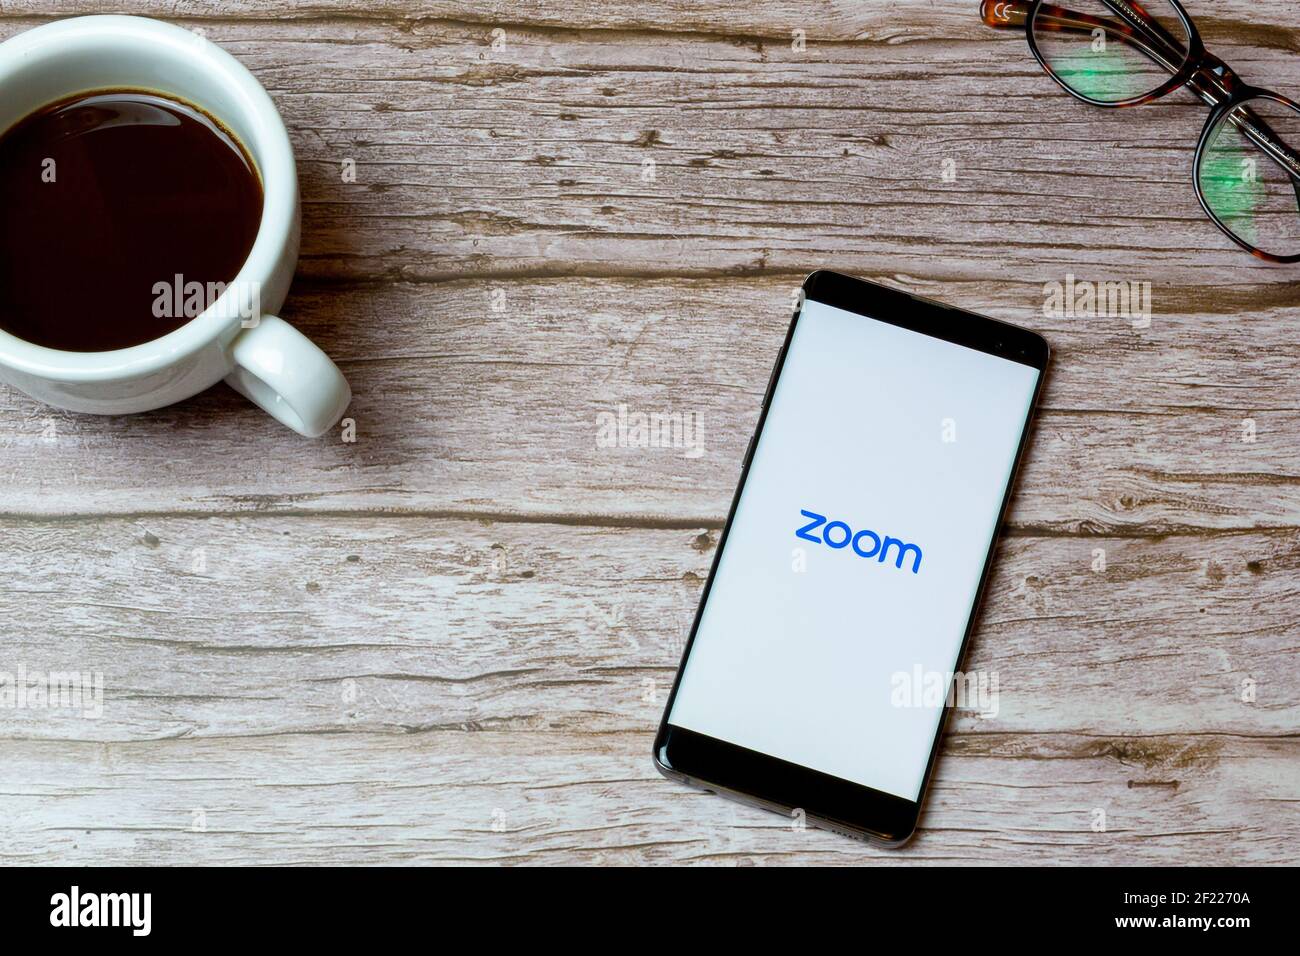 Ein Mobiltelefon oder Mobiltelefon auf einem Tisch Oder Schreibtisch mit der Zoom Calling App geöffnet und ein Kaffee daneben Stockfoto